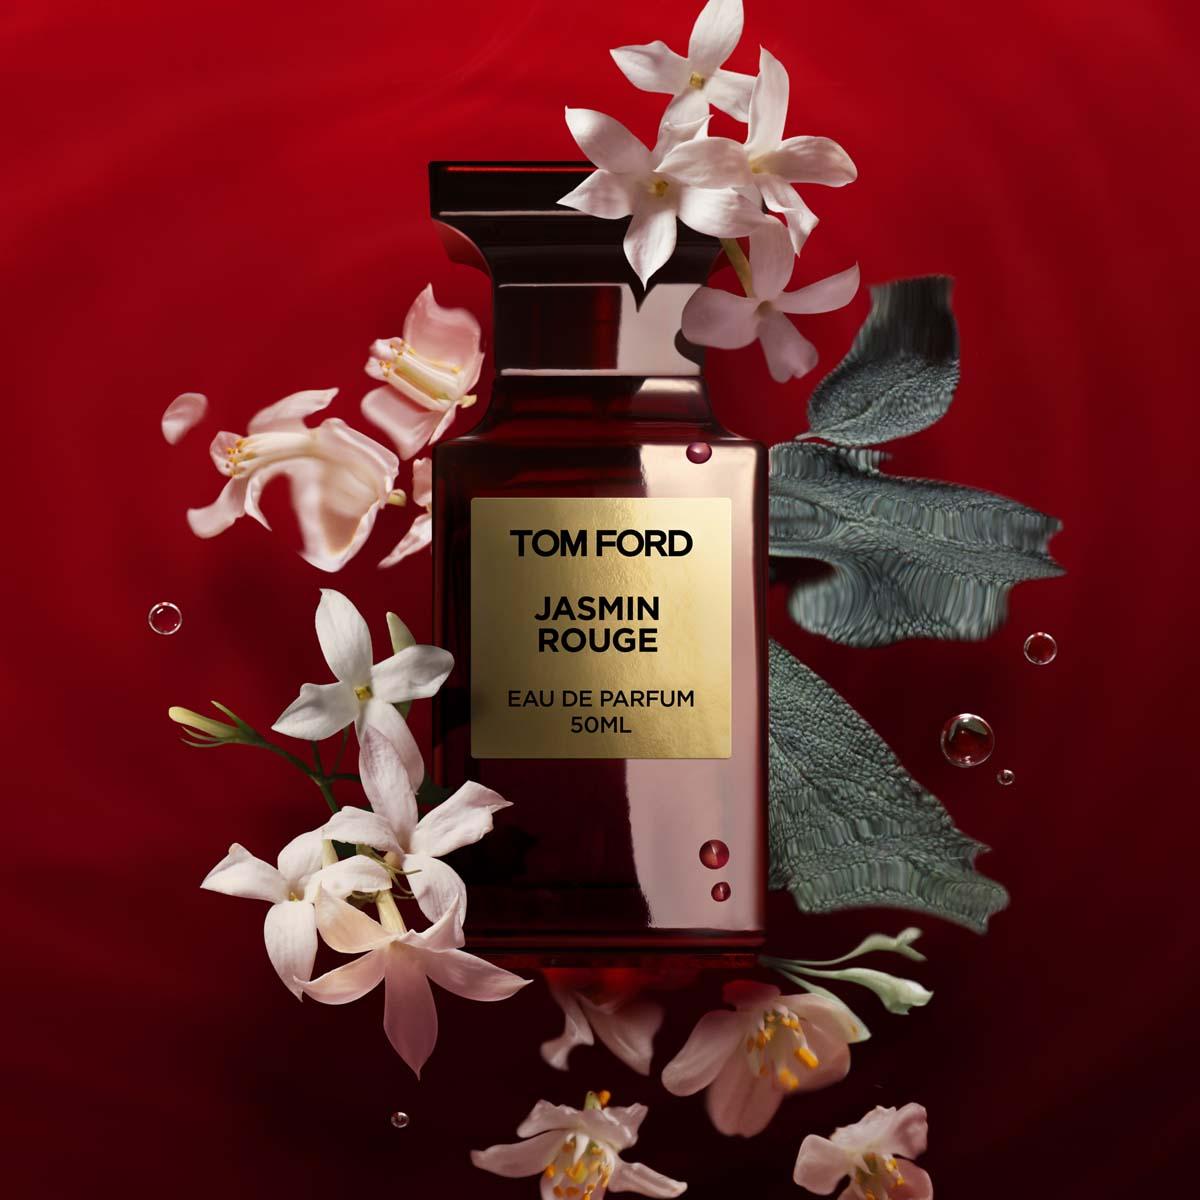 Tom Ford Jasmin Rouge Eau de Parfum 50ml | FEELUNIQUE